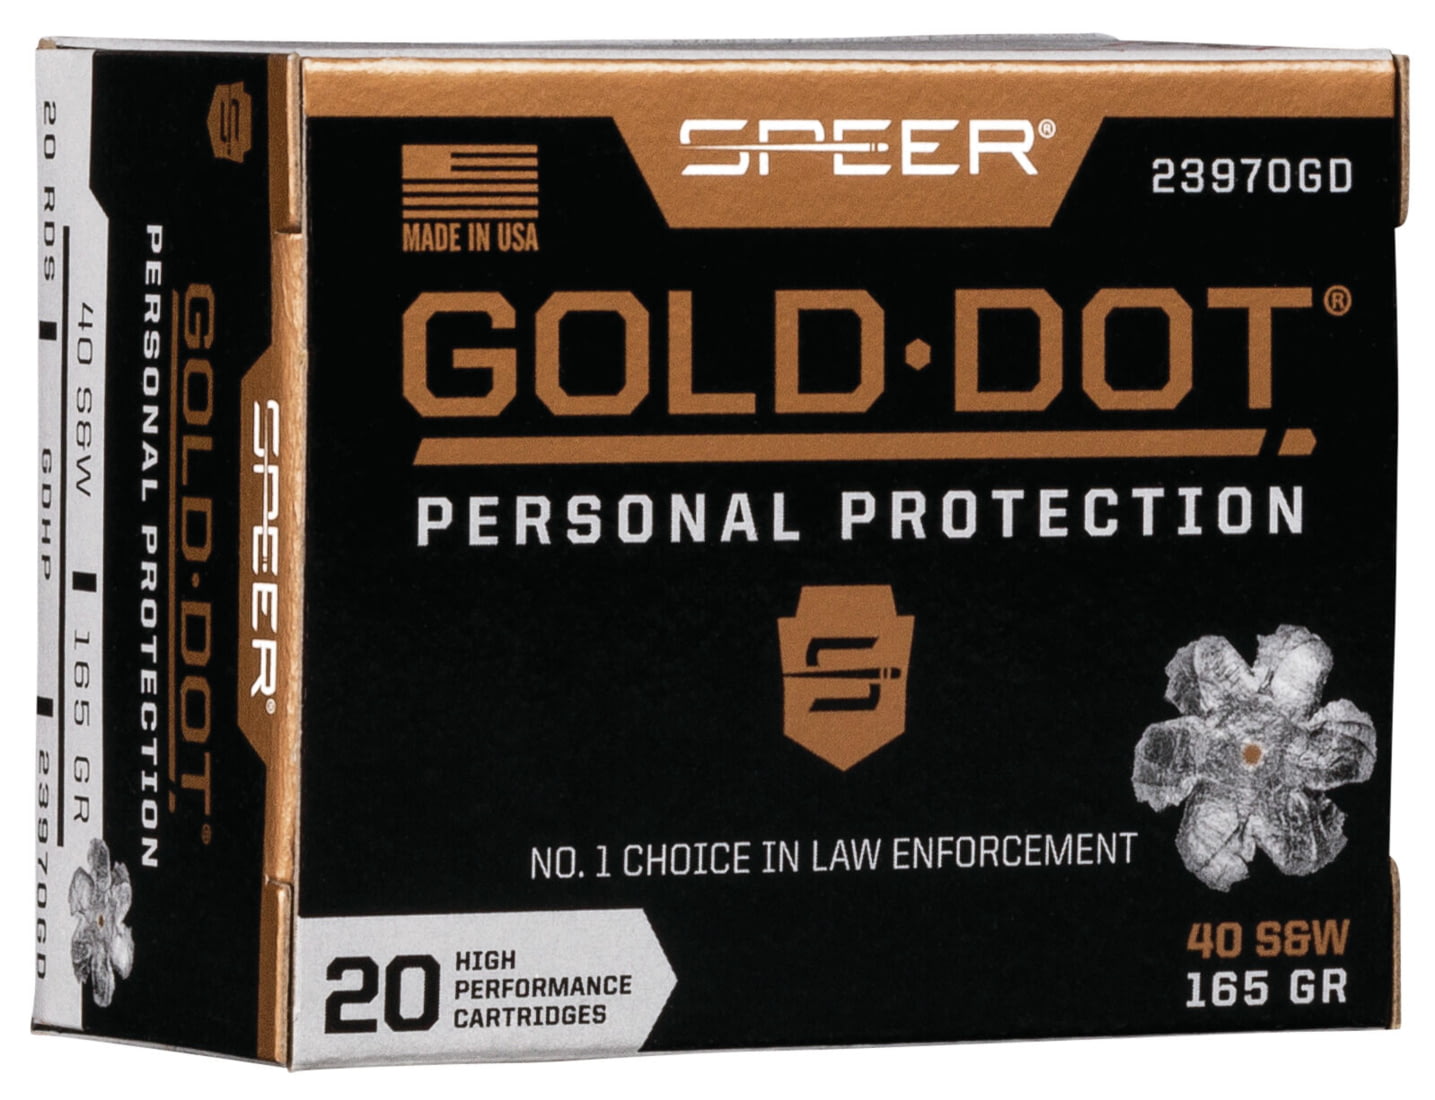 Speer Gold Dot Handgun Personal Protection .40 S&W 165 grain Gold Dot Hollow Point Centerfire Pistol Ammunition